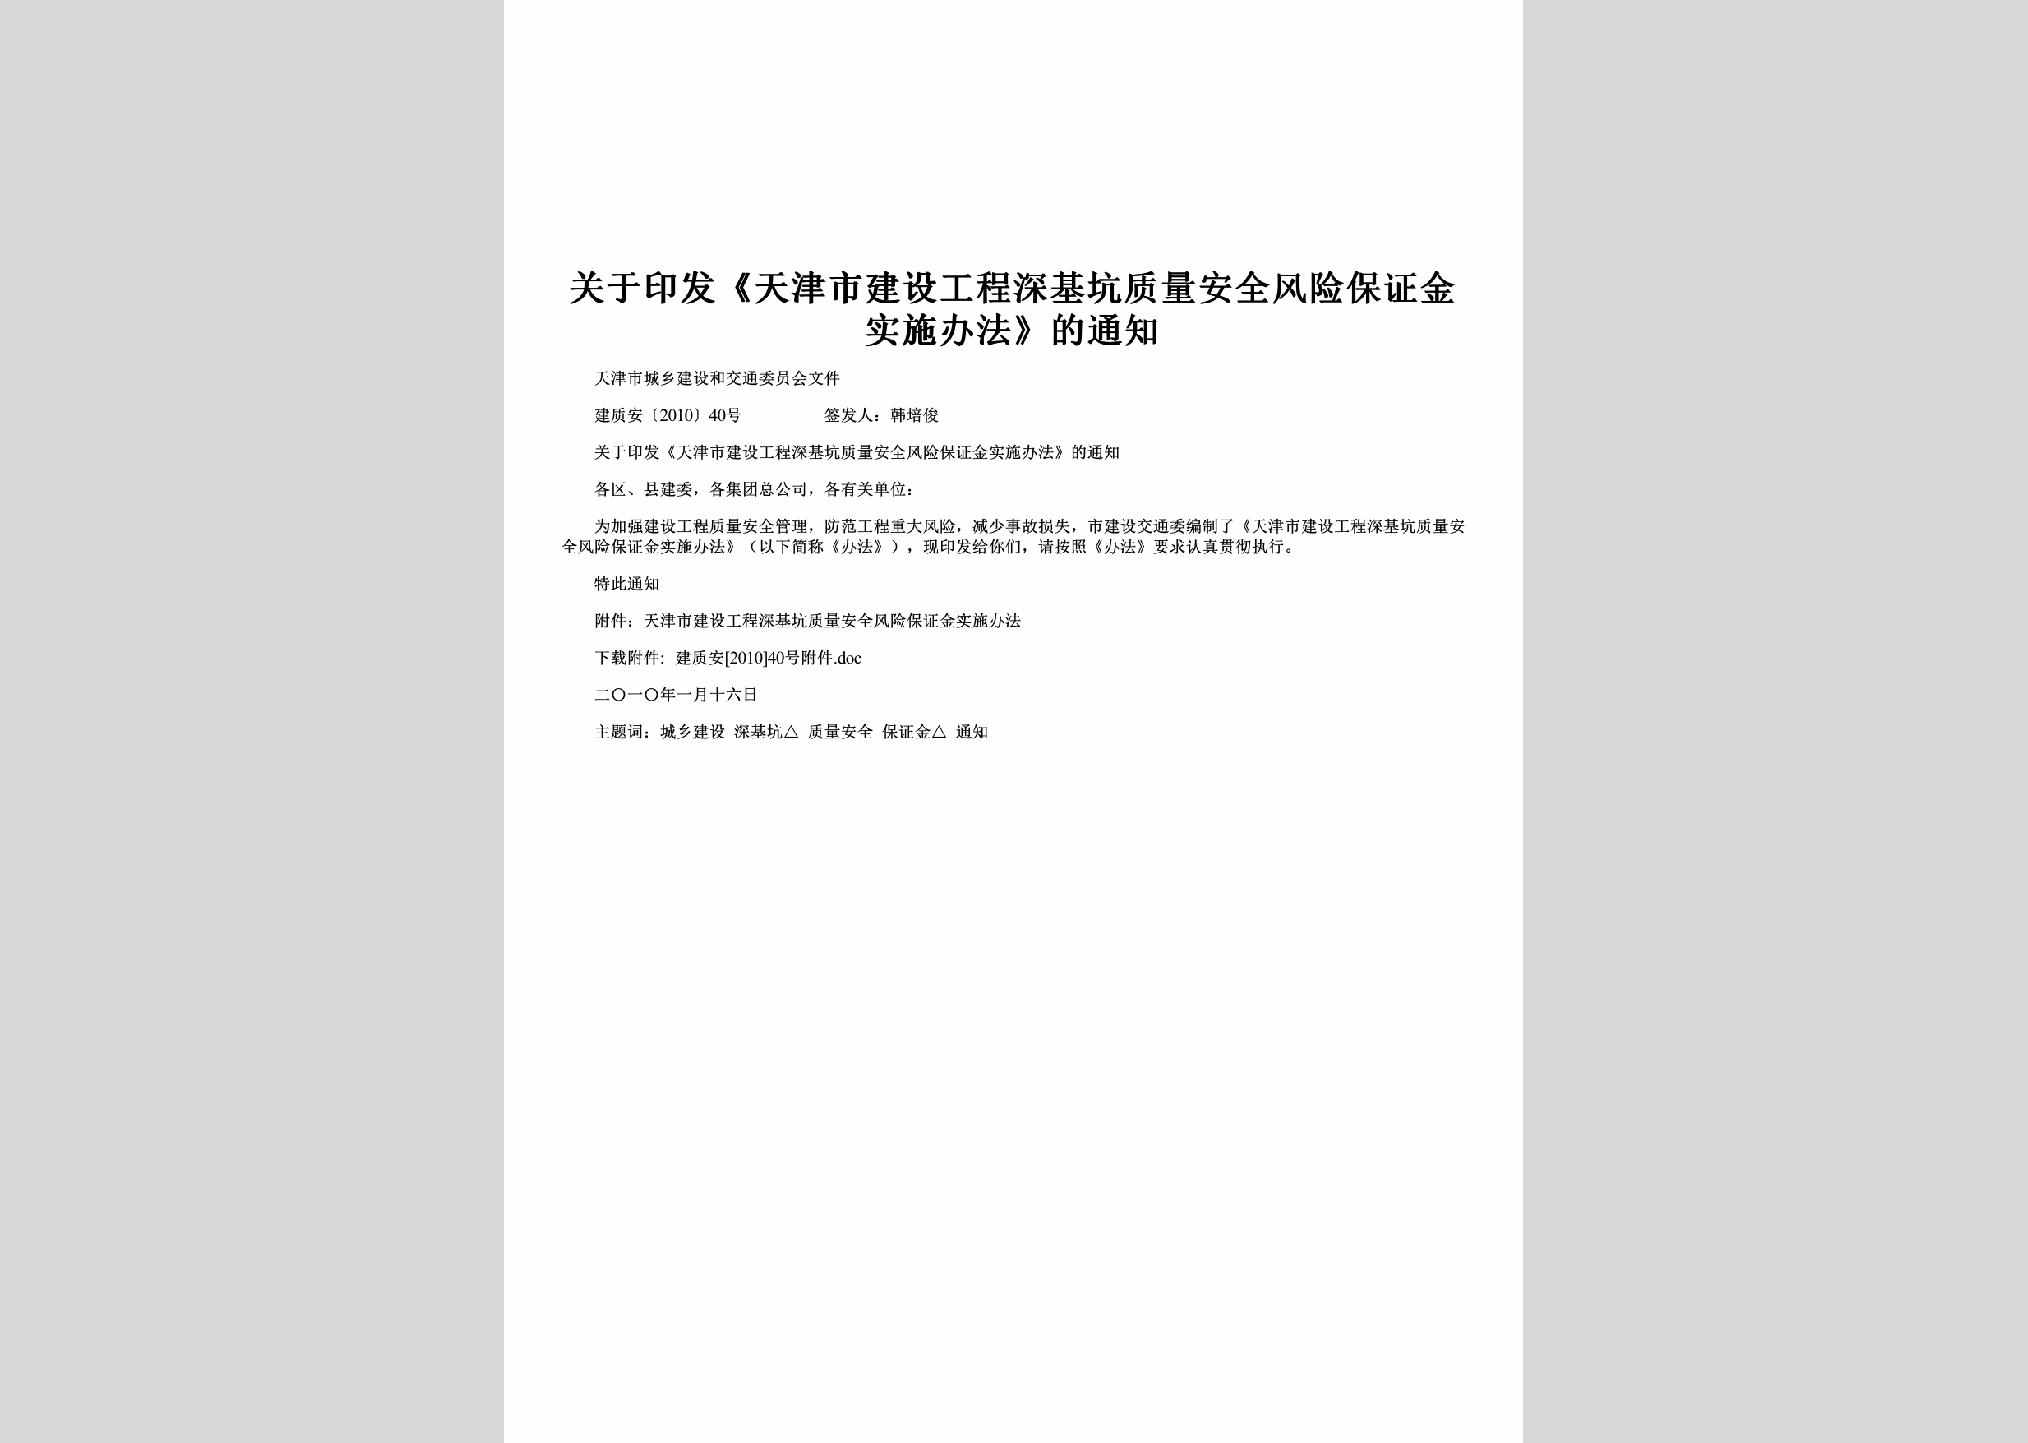 建质安[2010]40号：关于印发《天津市建设工程深基坑质量安全风险保证金实施办法》的通知